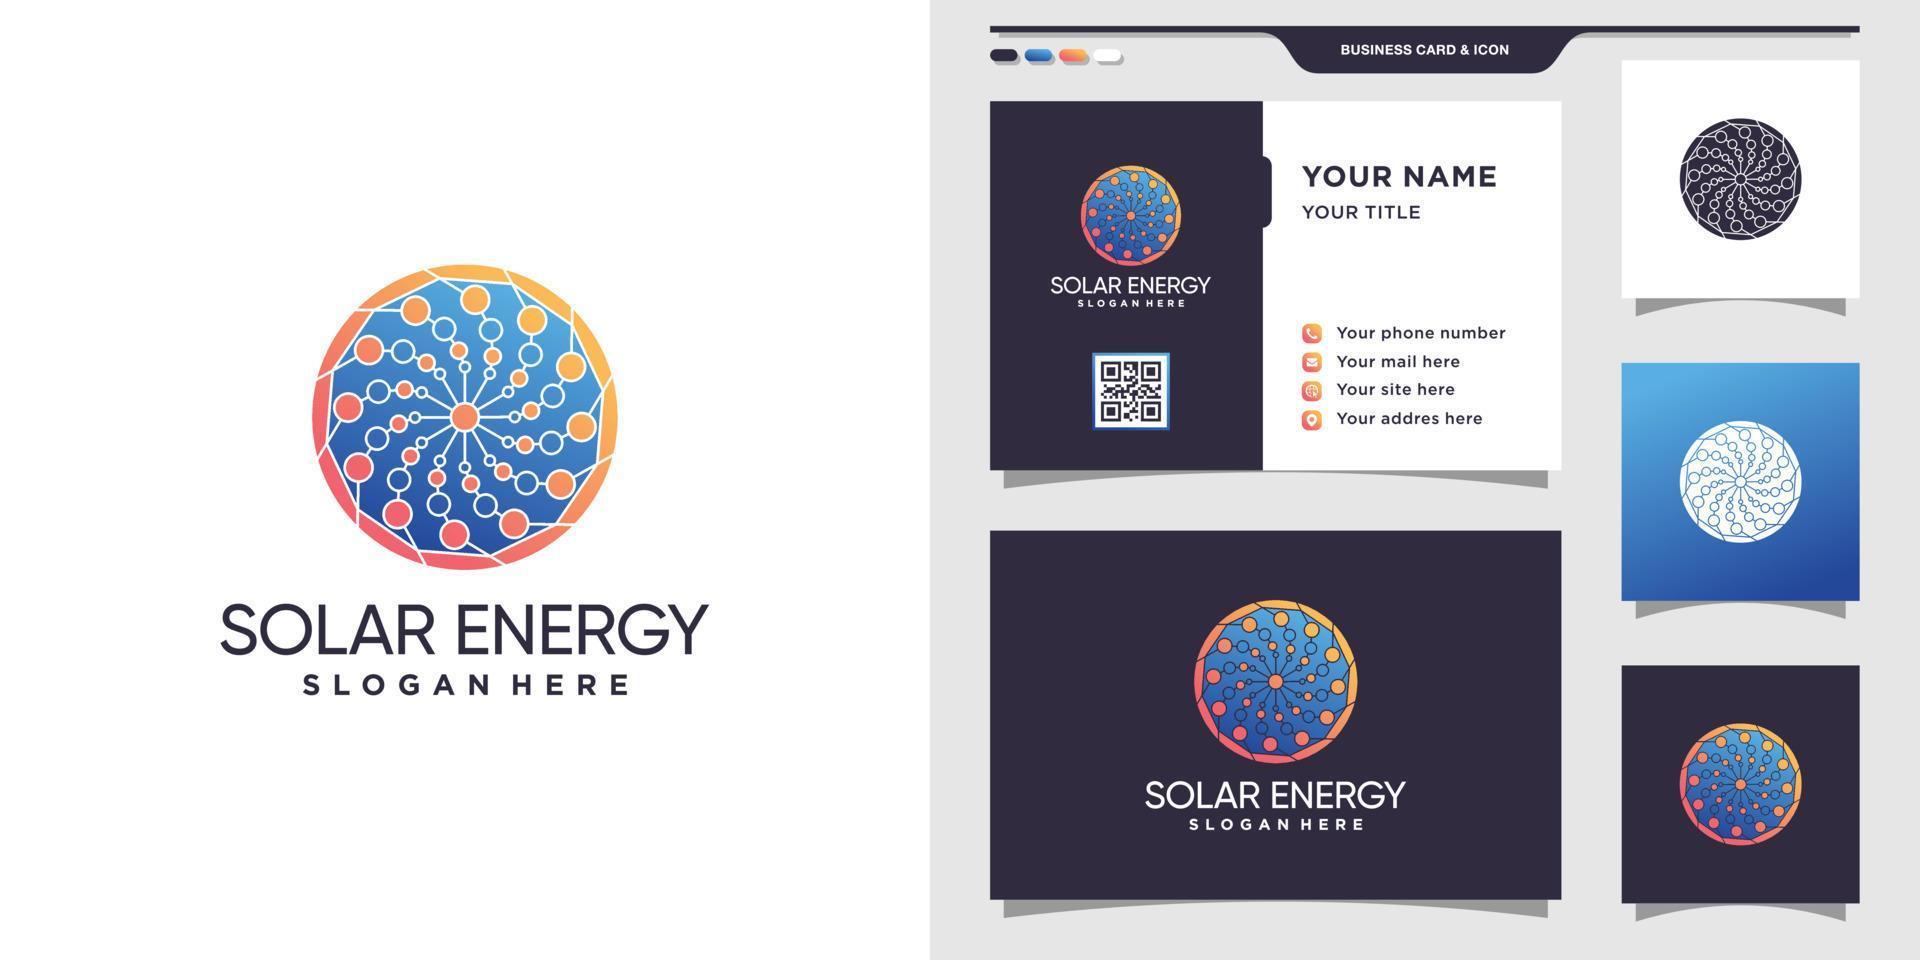 Solarenergie-Logo mit modernem Konzept und Premium-Vektor für Visitenkartendesign vektor